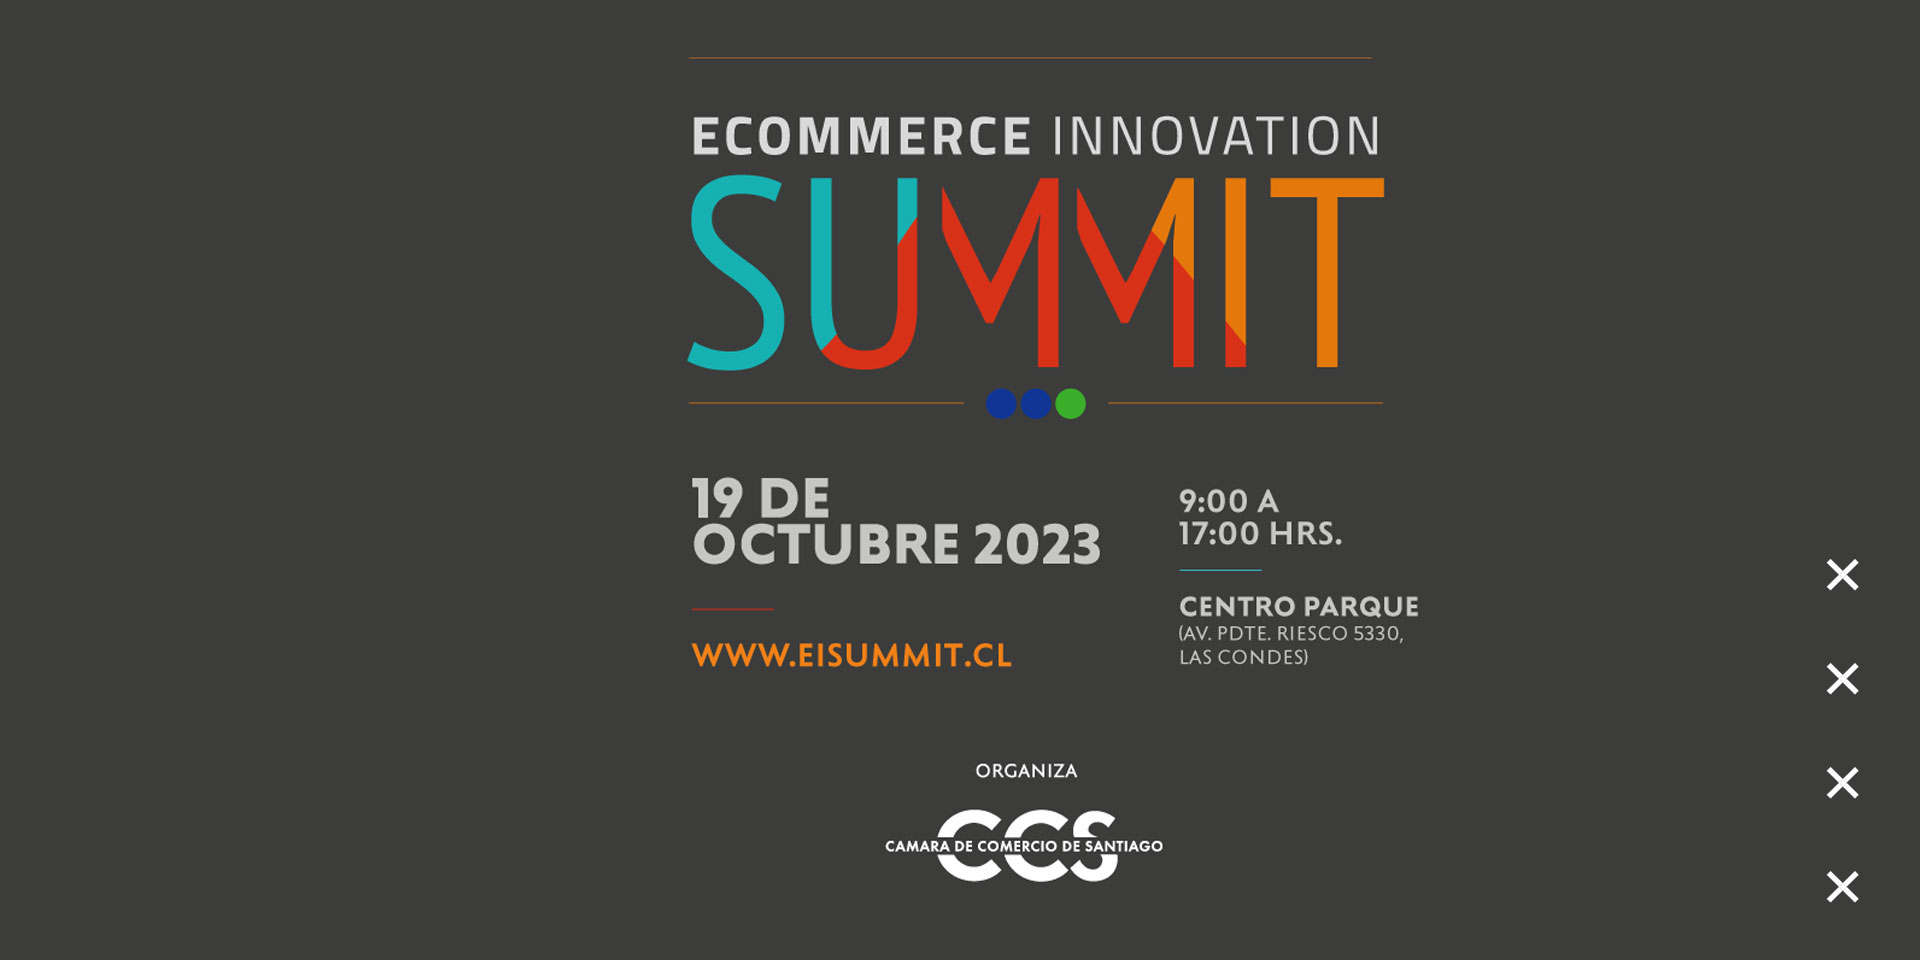 Inscripciones abiertas para el eCommerce Innovation Summit 2023